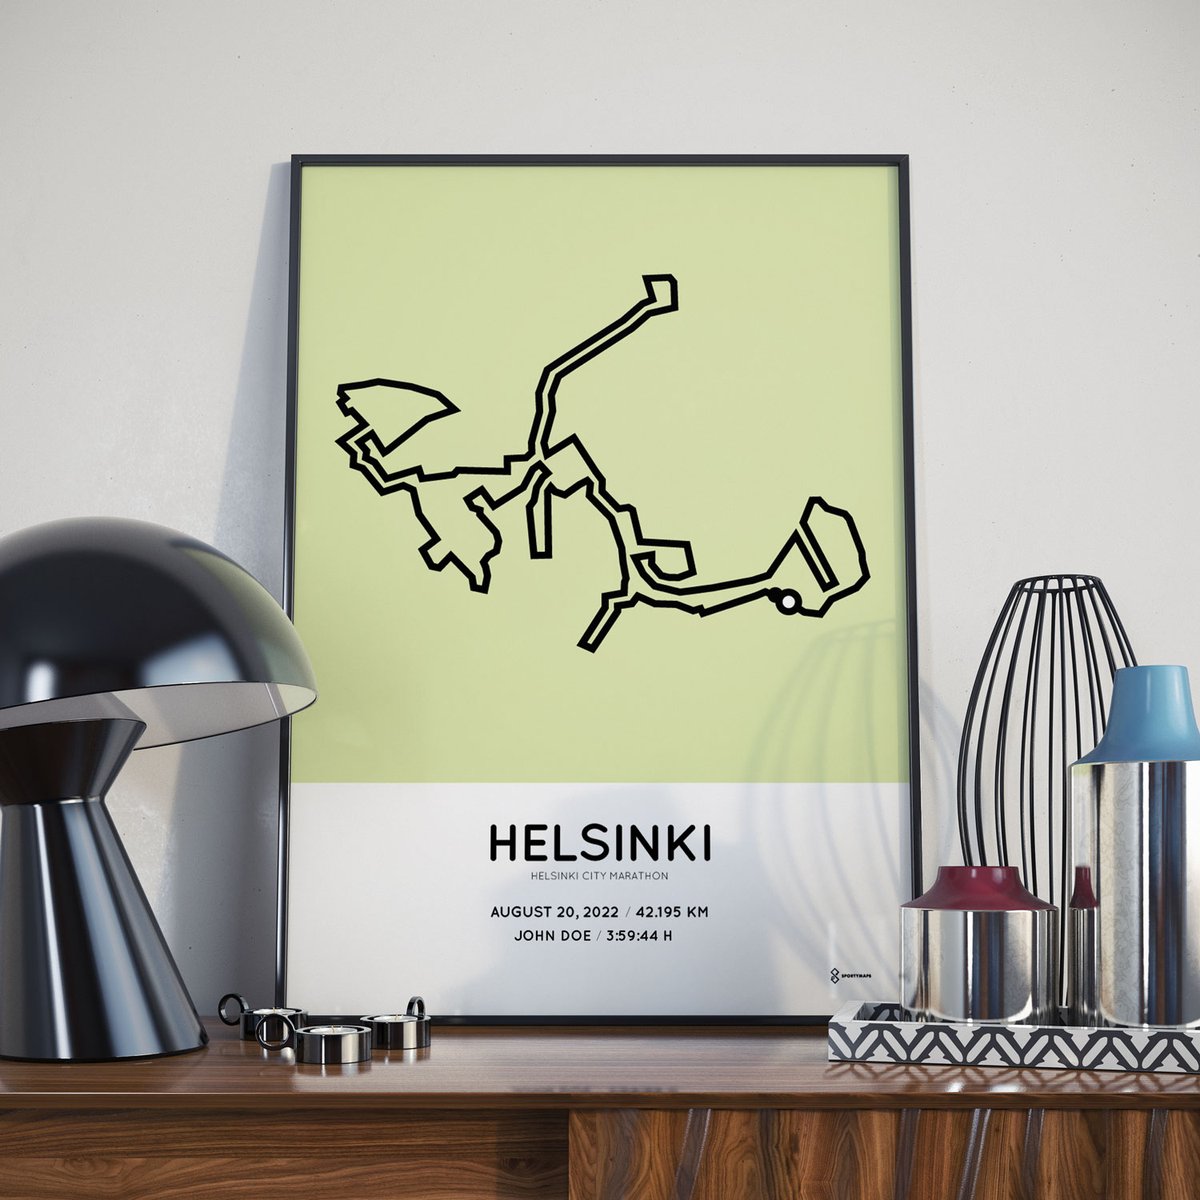 2022 Helsinki Marathon course poster.

#werunhelsinki #HM2022 #helsinkimarathon #juoksutapahtuma #juoksu #run #running #helsinki #runinfinland #competition #arvonta #kuvakisa #running #runner #runrunrun #laufen #courir #correr #correre #hardlopen #rennen #marathon  #sportymaps https://t.co/EG8zi6kwgv